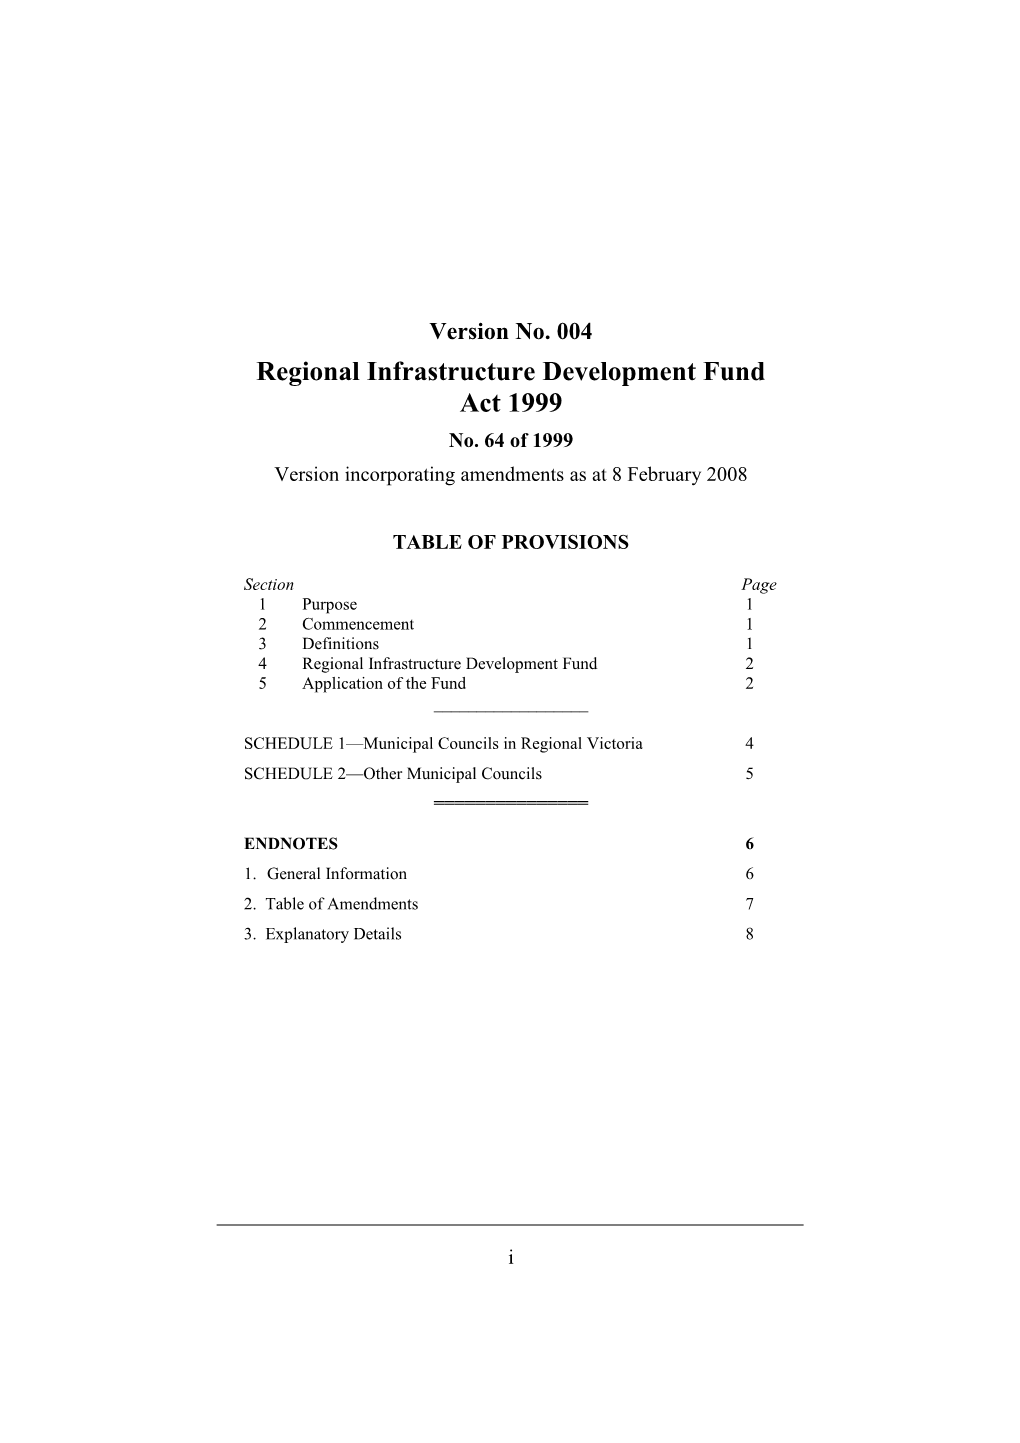 Regional Infrastructure Development Fund Act 1999